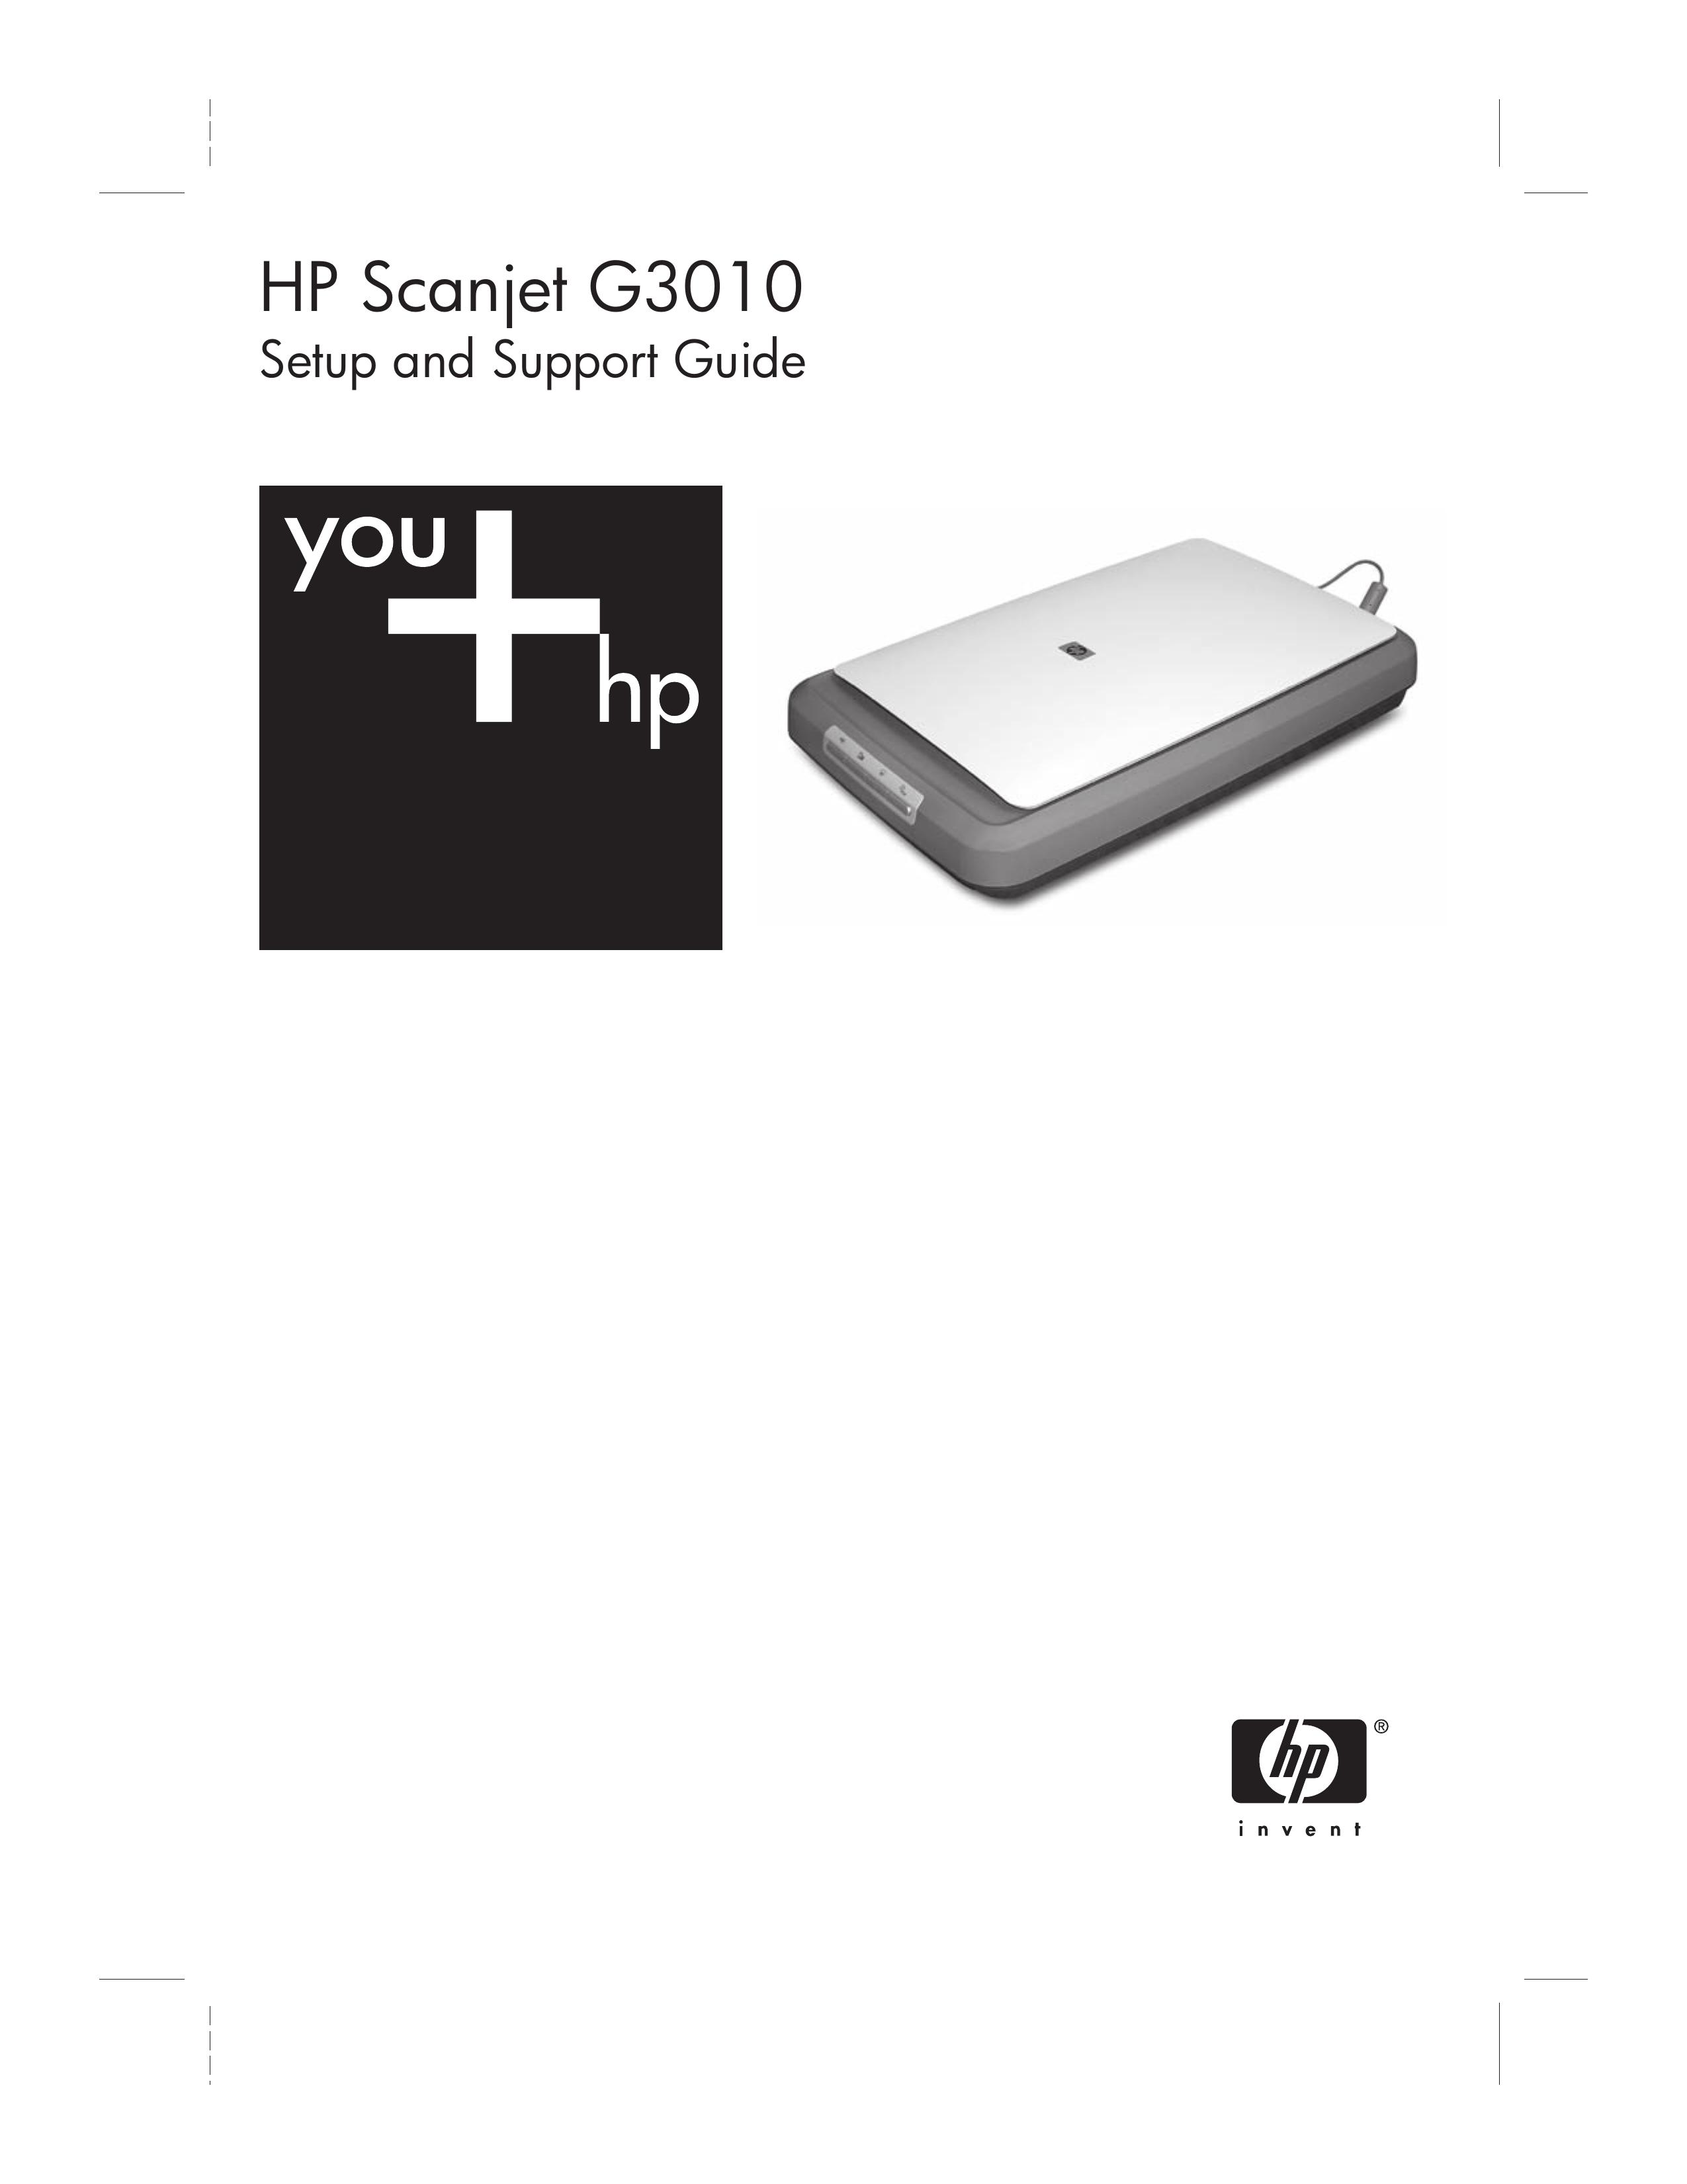 HP (Hewlett-Packard) G 3010 Photo Scanner User Manual